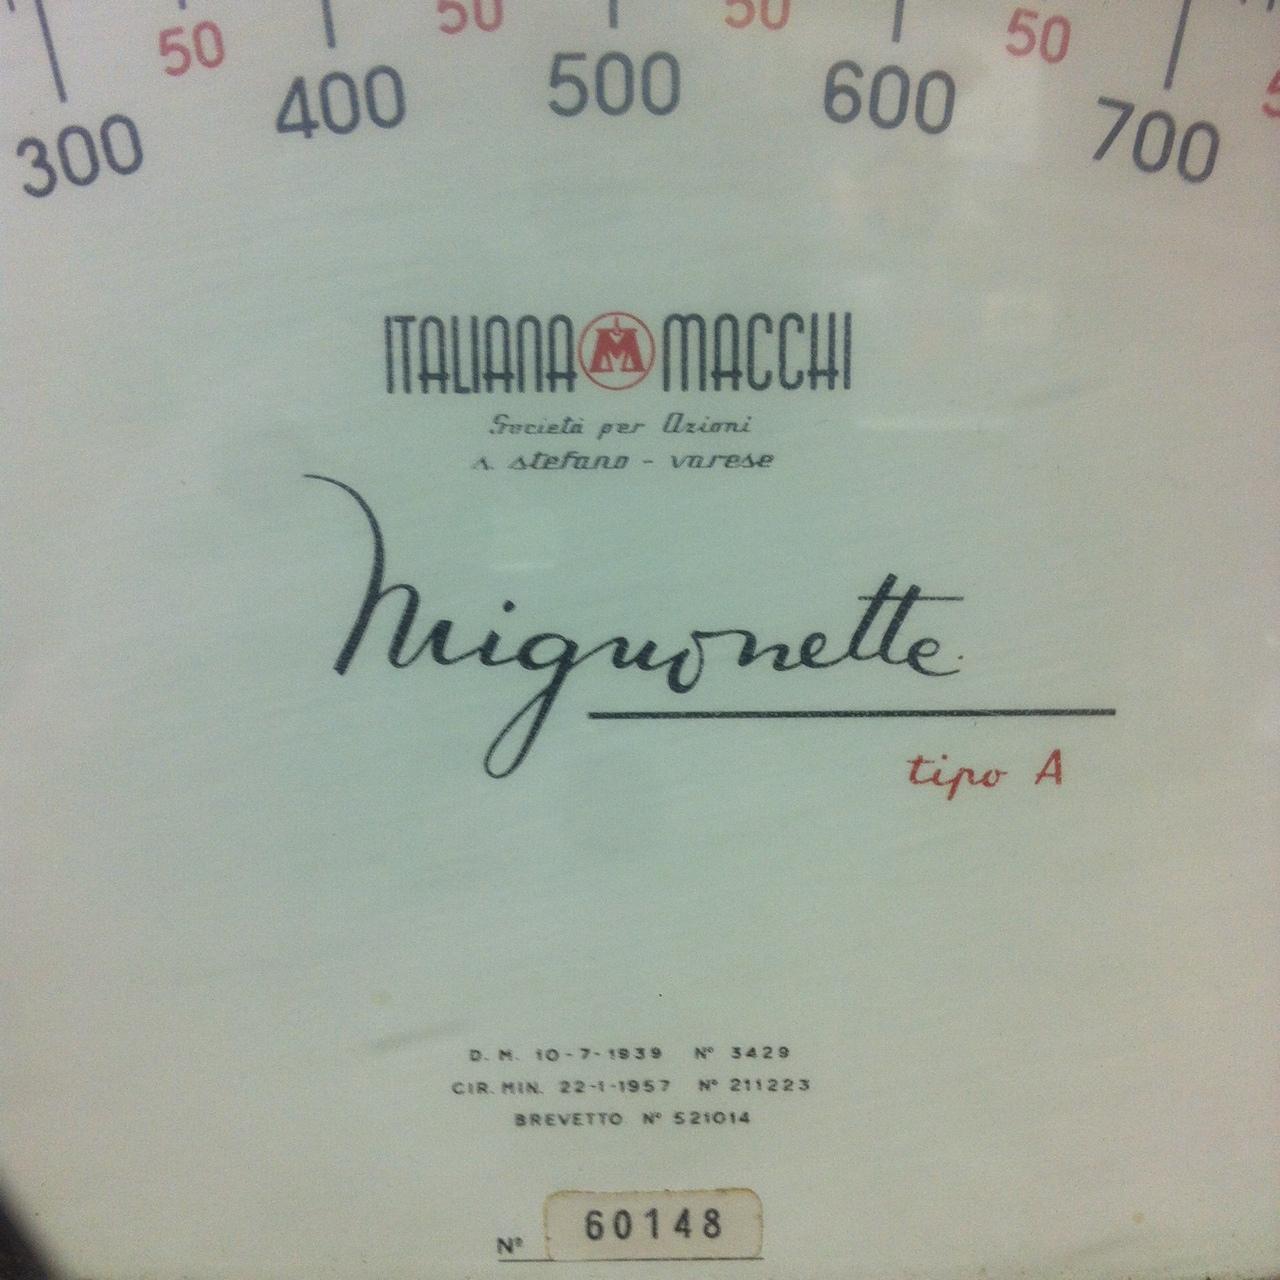 BILANCIA da negozio MIGNONETTE, per ITALIANA MACCHI, Italia, Anni '50.